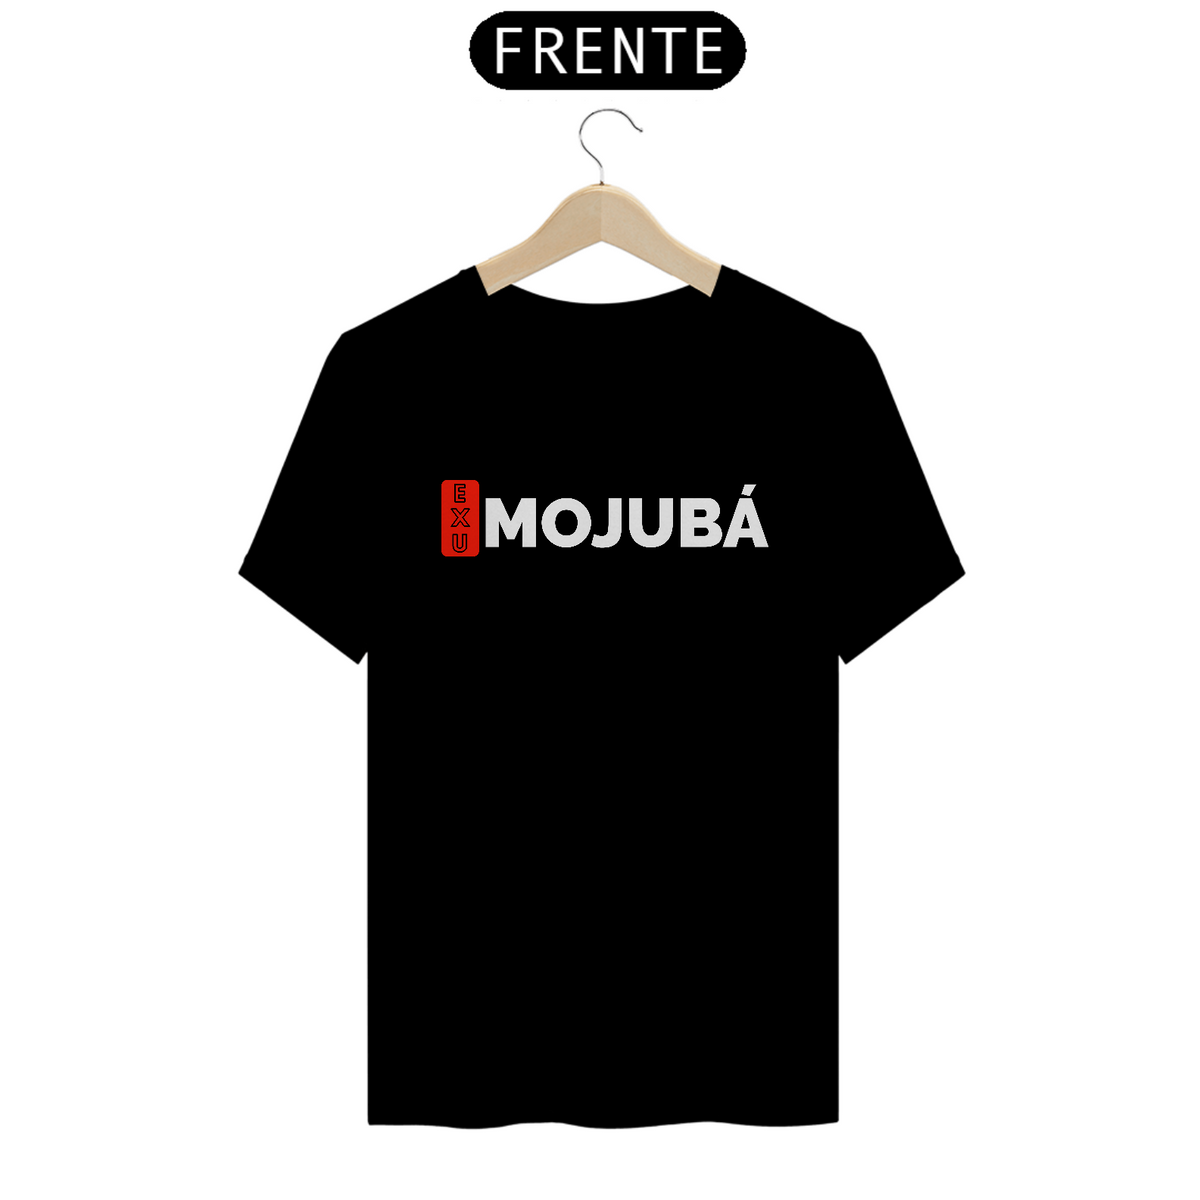 Nome do produto: Camiseta Mojubá